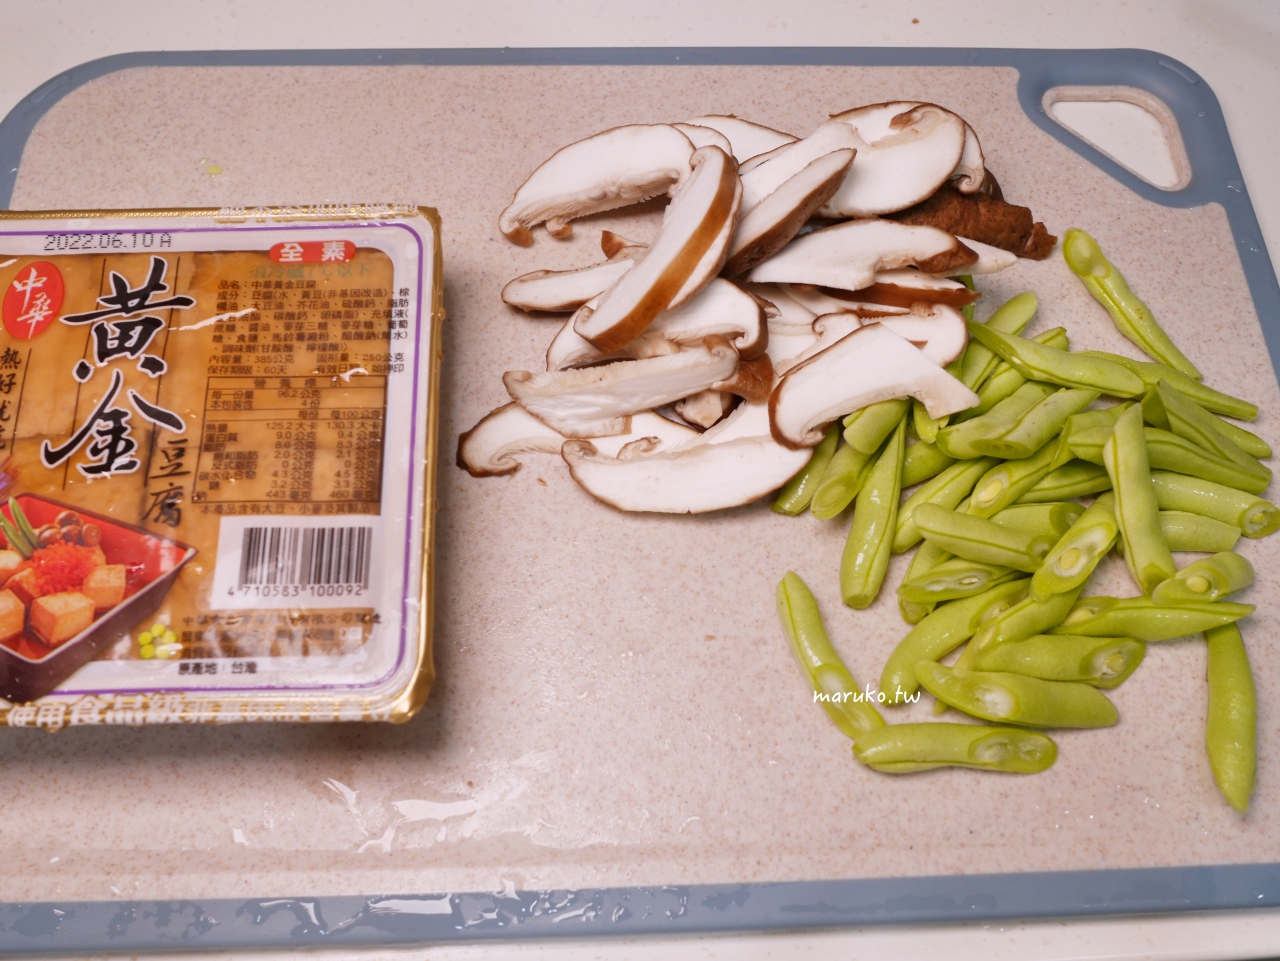 【食譜】油豆腐拌時蔬 5分鐘開飯 只要煮熟就能上桌 中華黃金豆腐推薦 @Maruko與美食有個約會